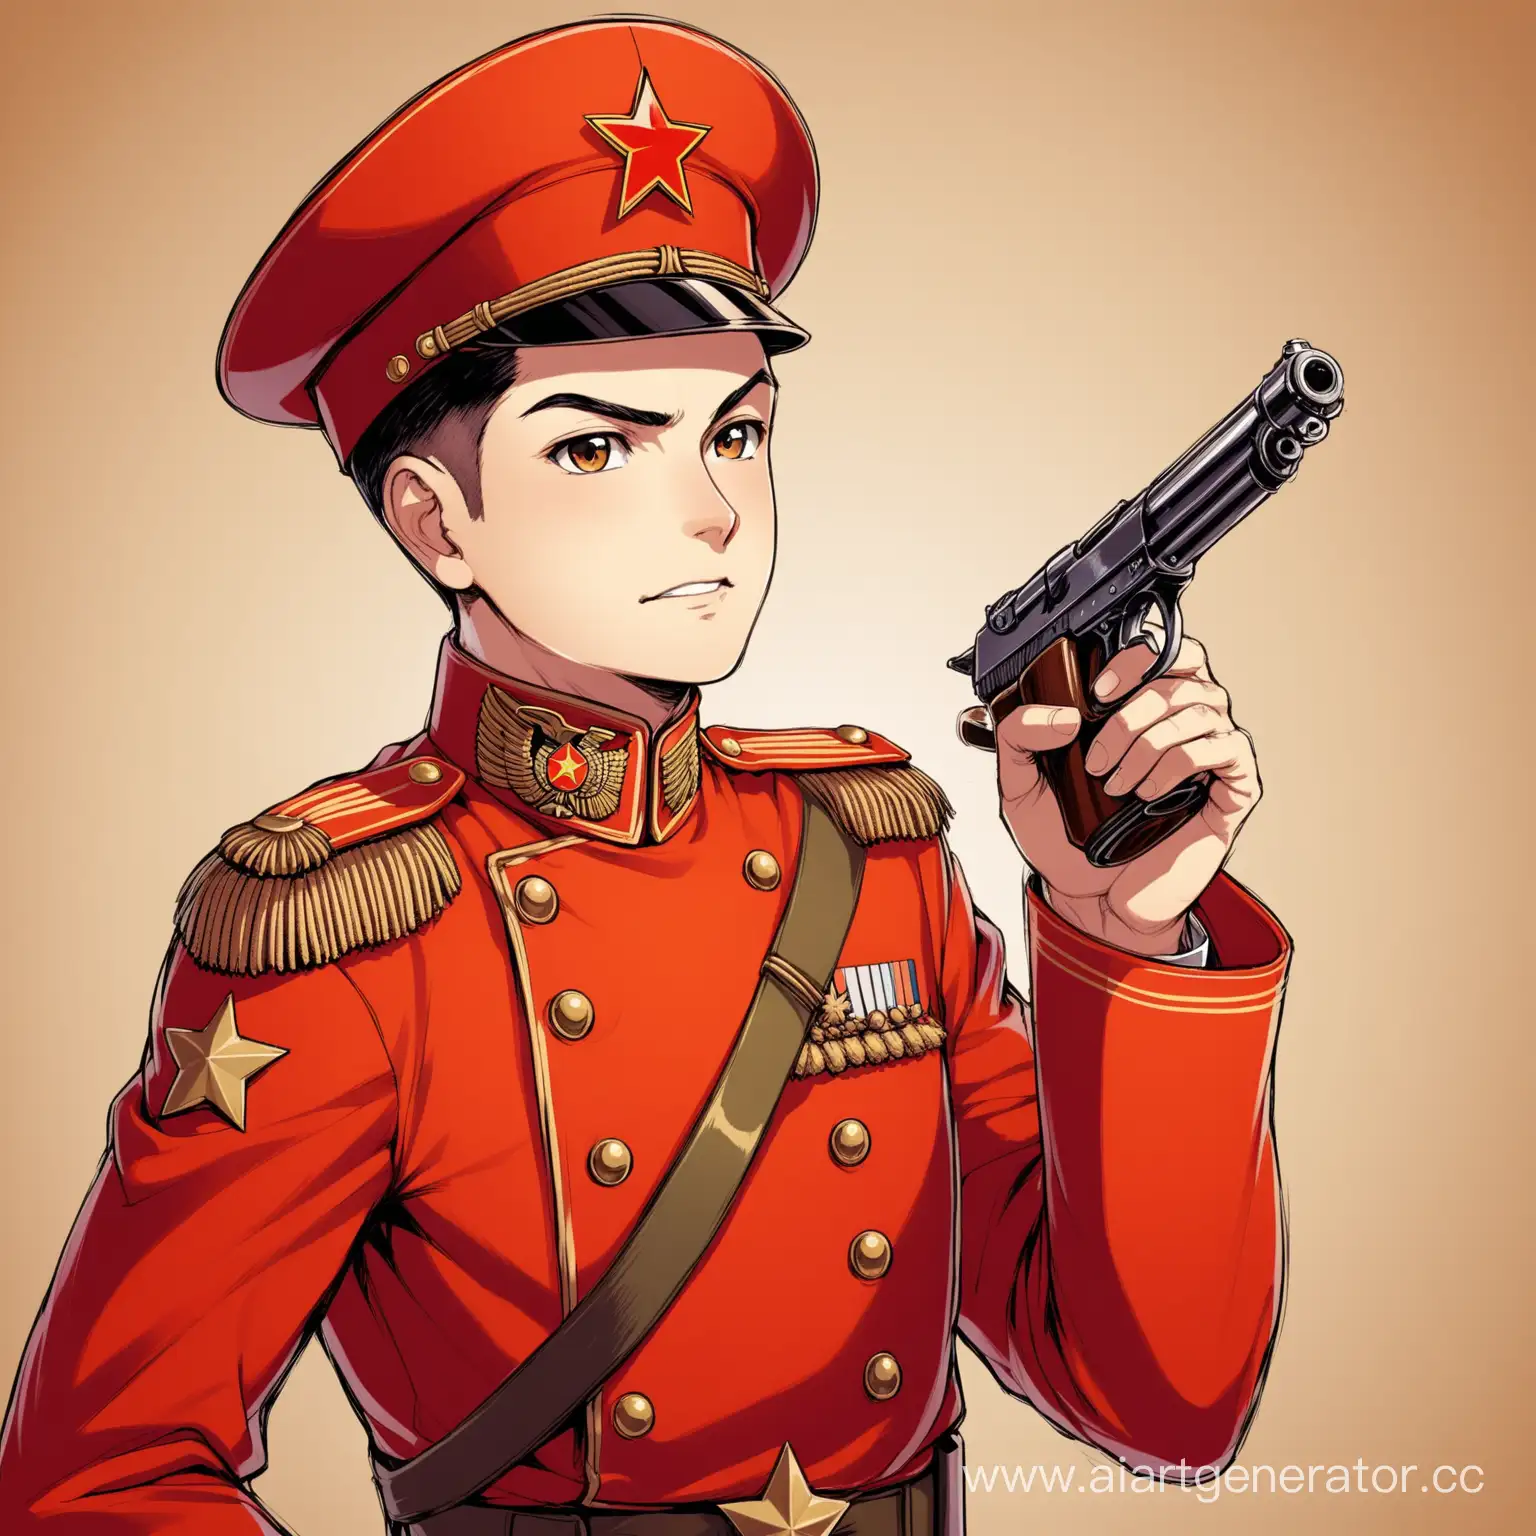 персонаж, adopt. Мужчина солдат начала в форме красноармейца начала 20 века, в фуражке, с погонами и пистолетом в руке. 